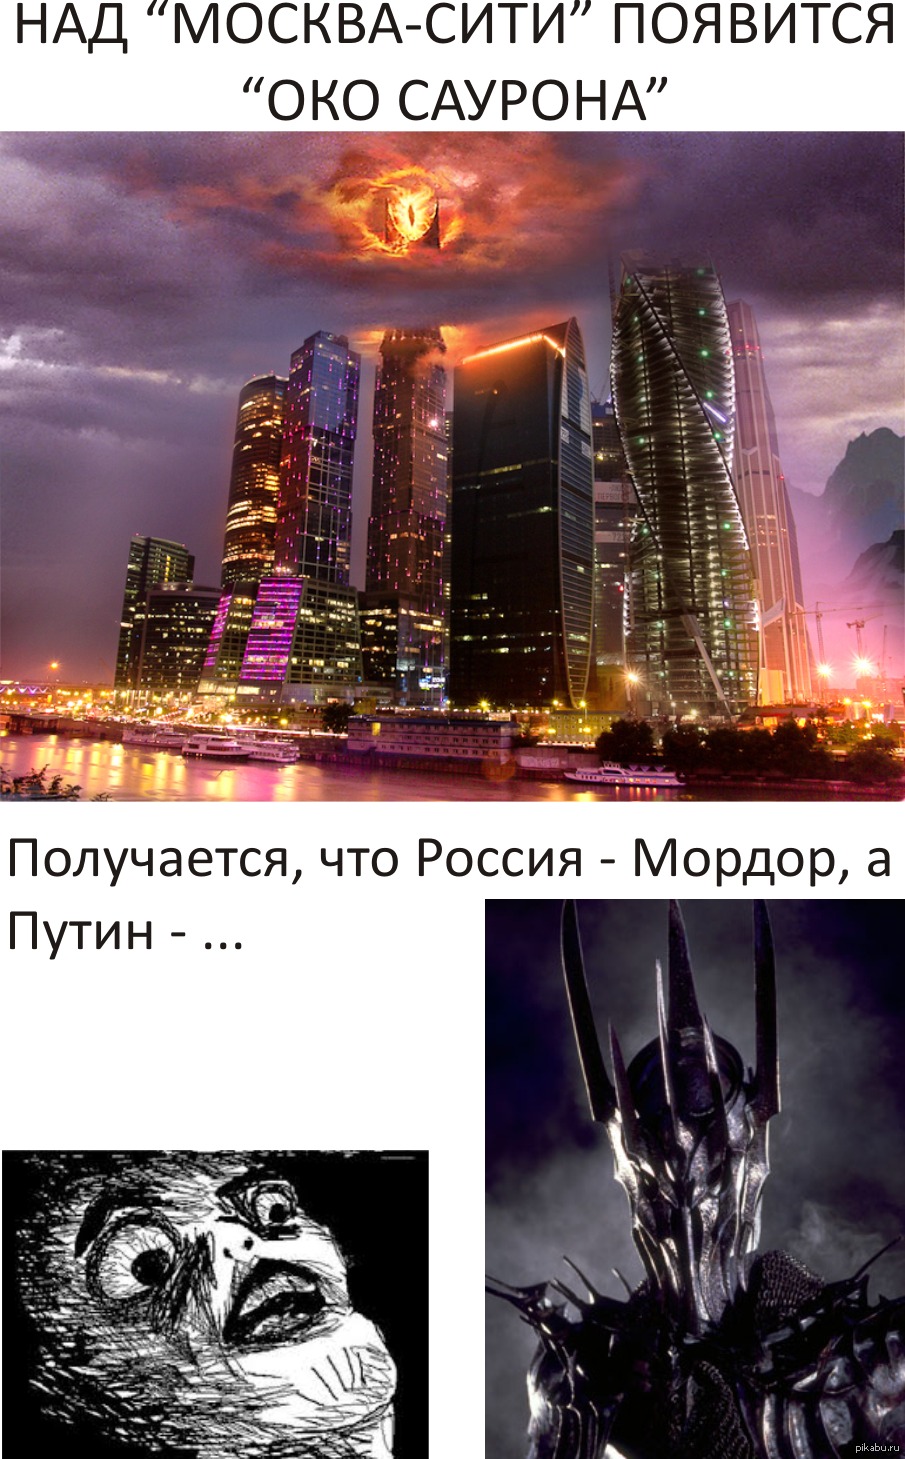 Око Саурона над Москва Сити